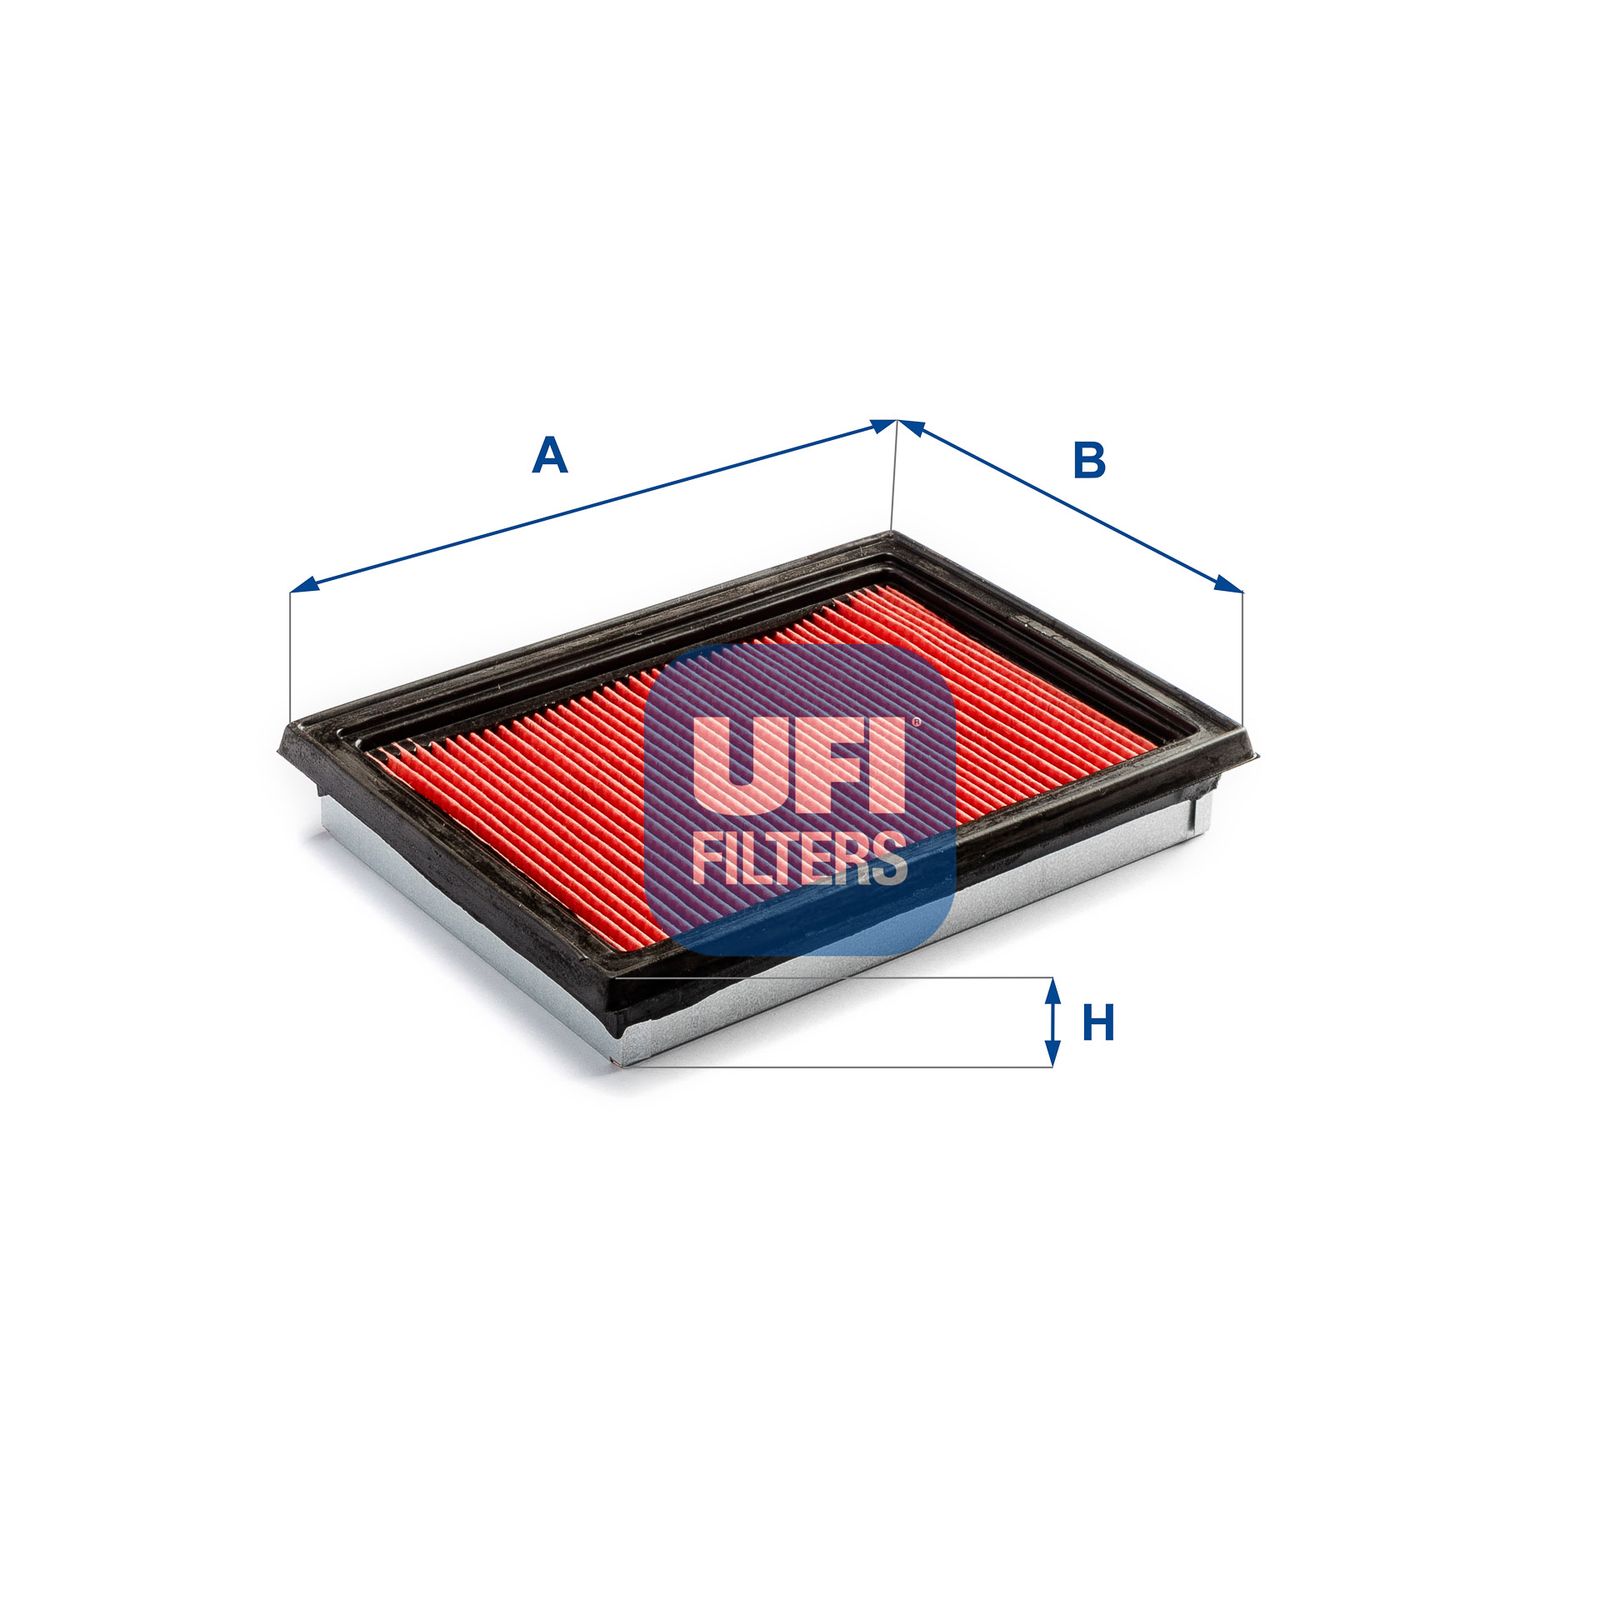 Vzduchový filtr UFI 30.001.00